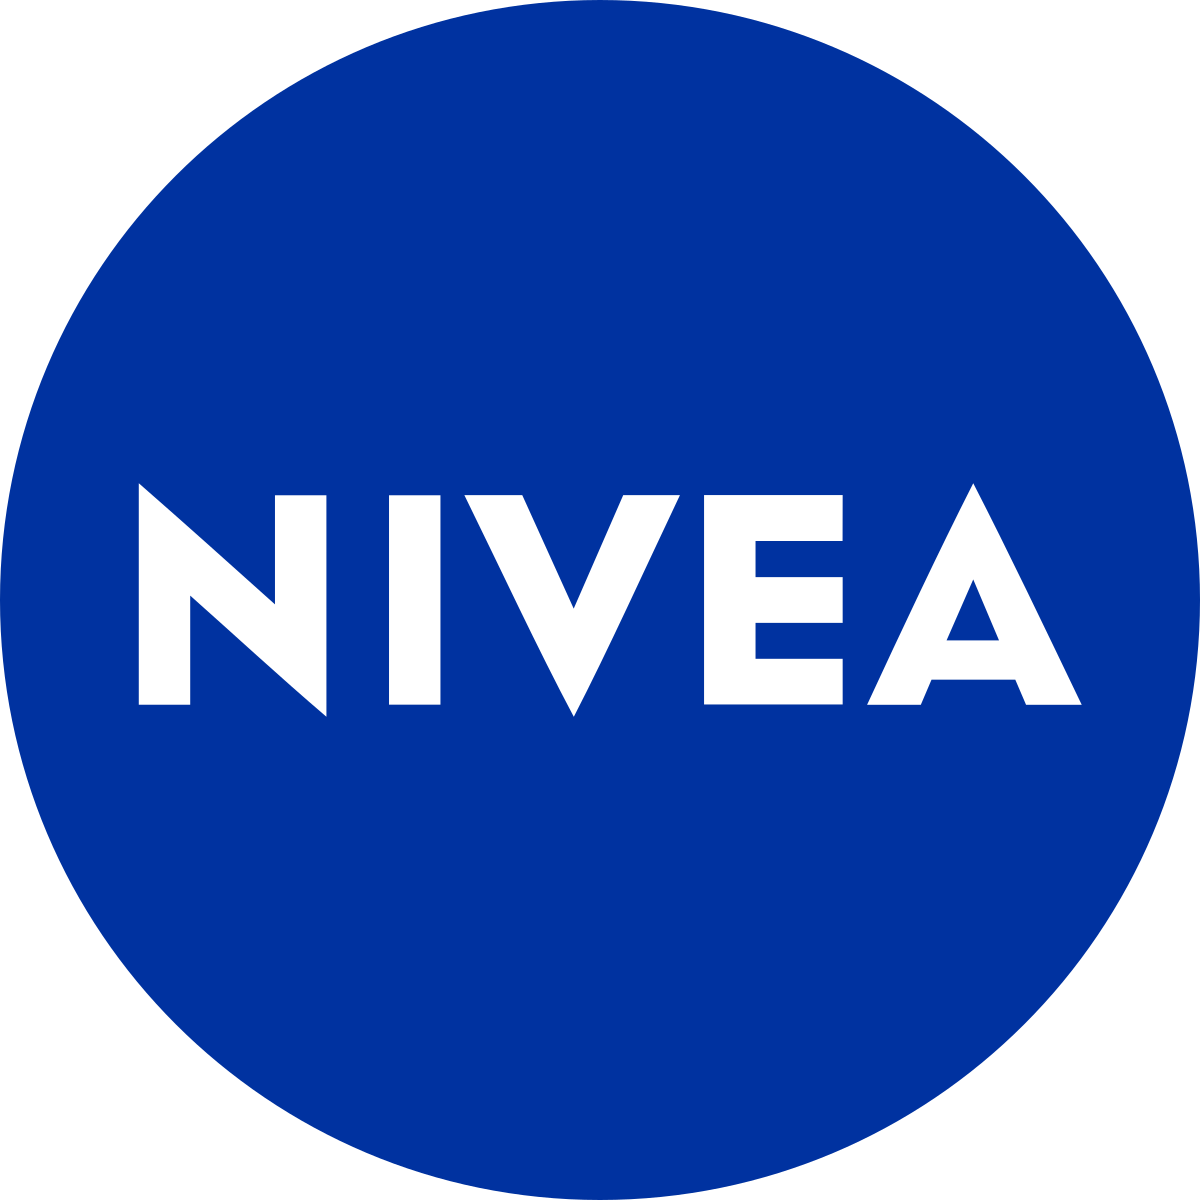 NIVEA online sale listings at Kapruka